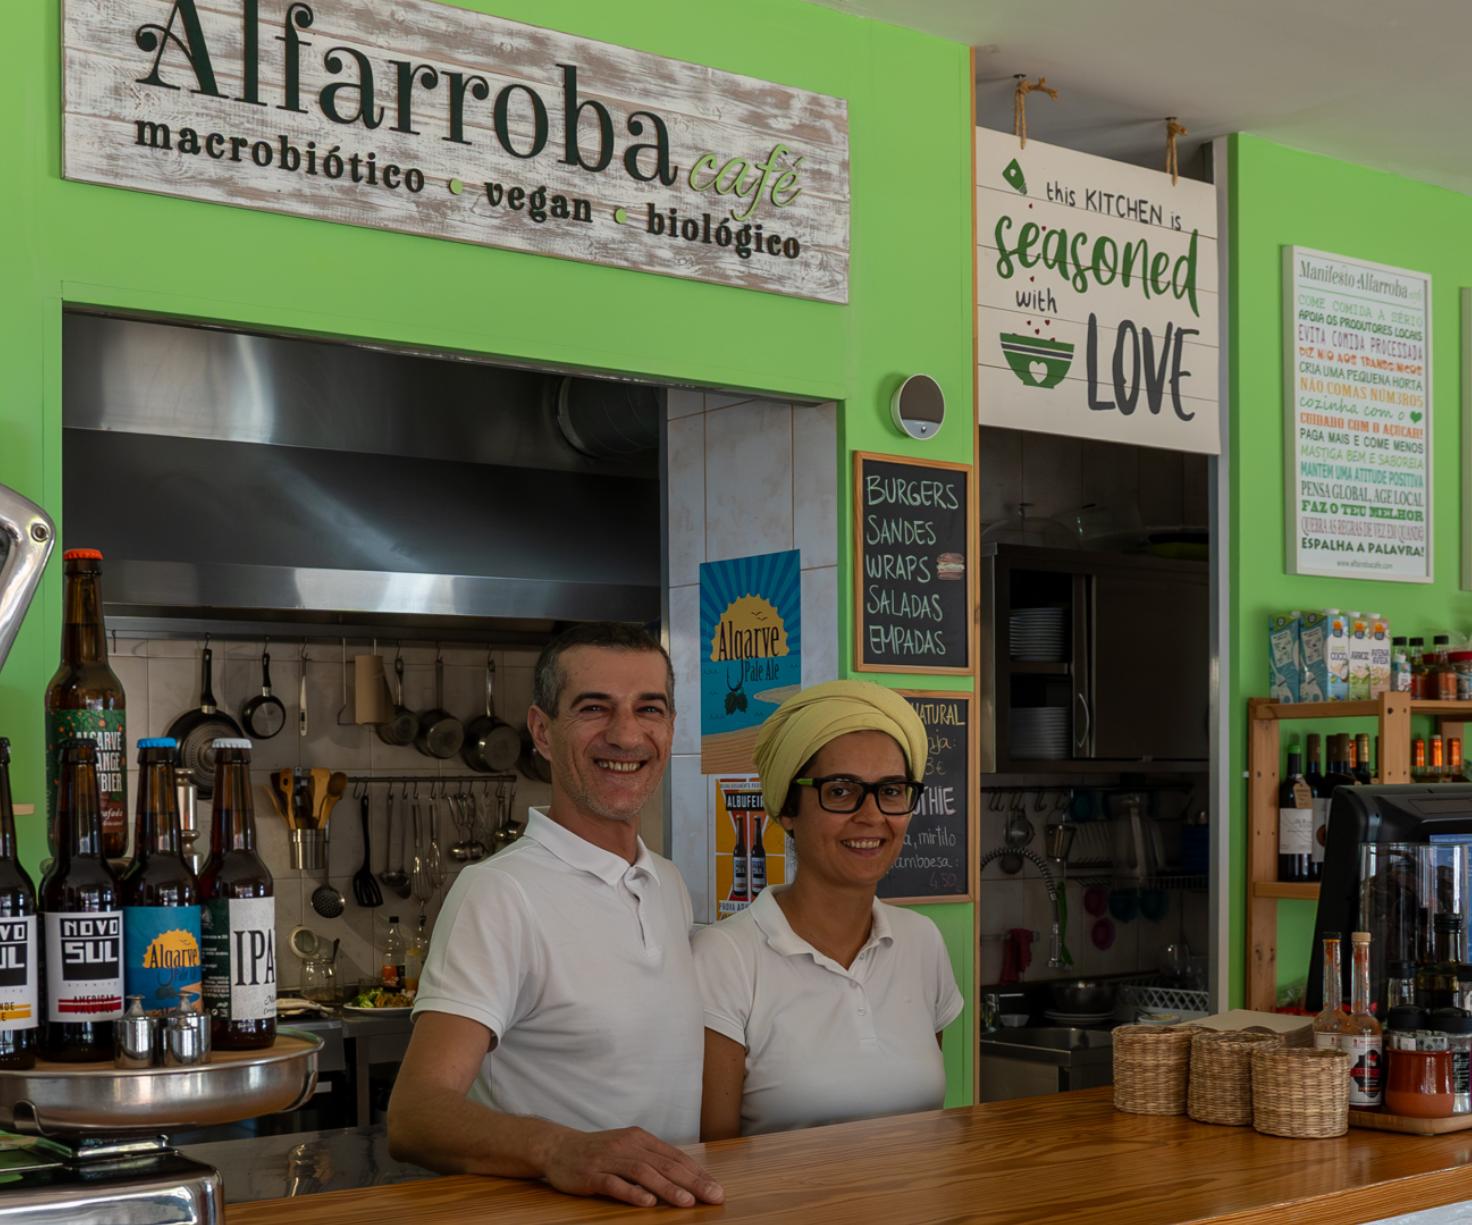 Alfarroba Café